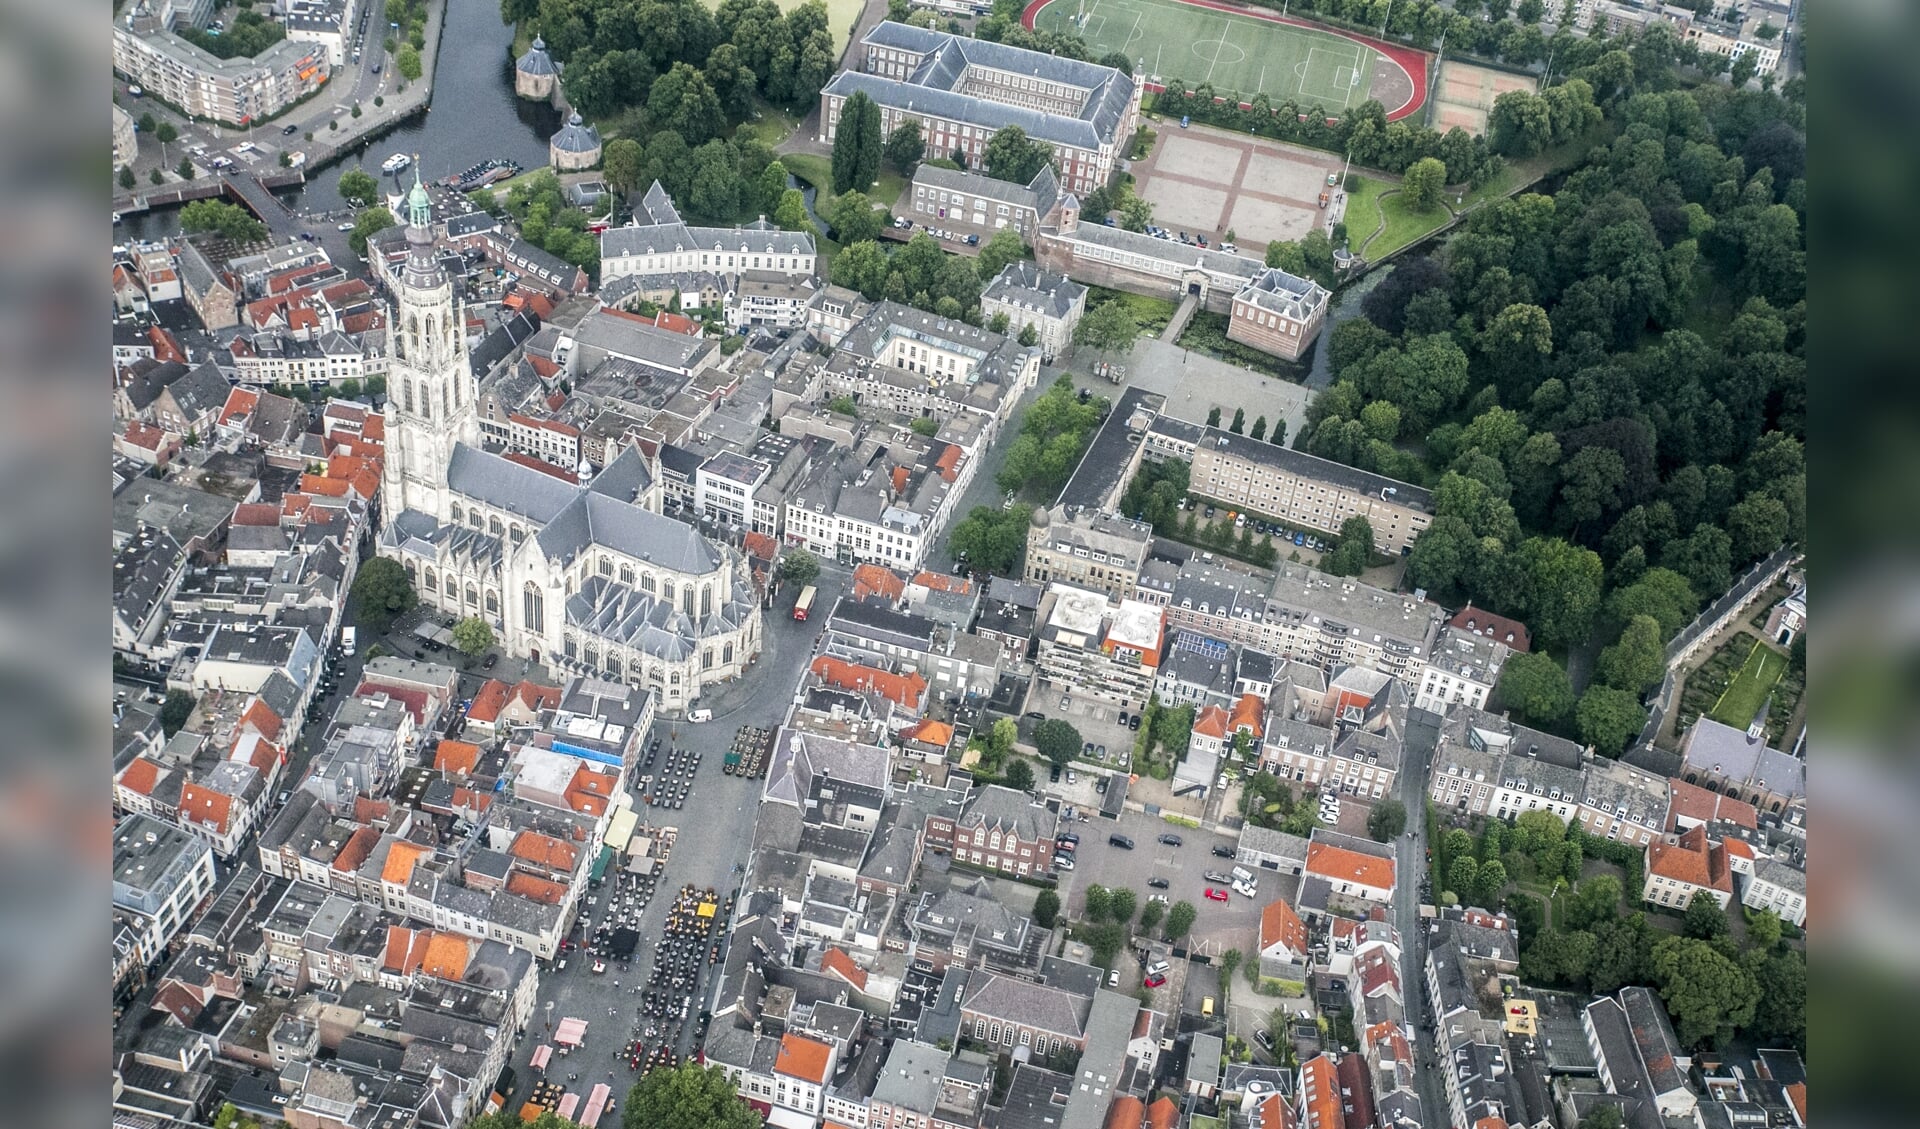 Het centrum van Breda is al eeuwen nagenoeg hetzelfde, met de kenmerkende Grote Kerk als hart.